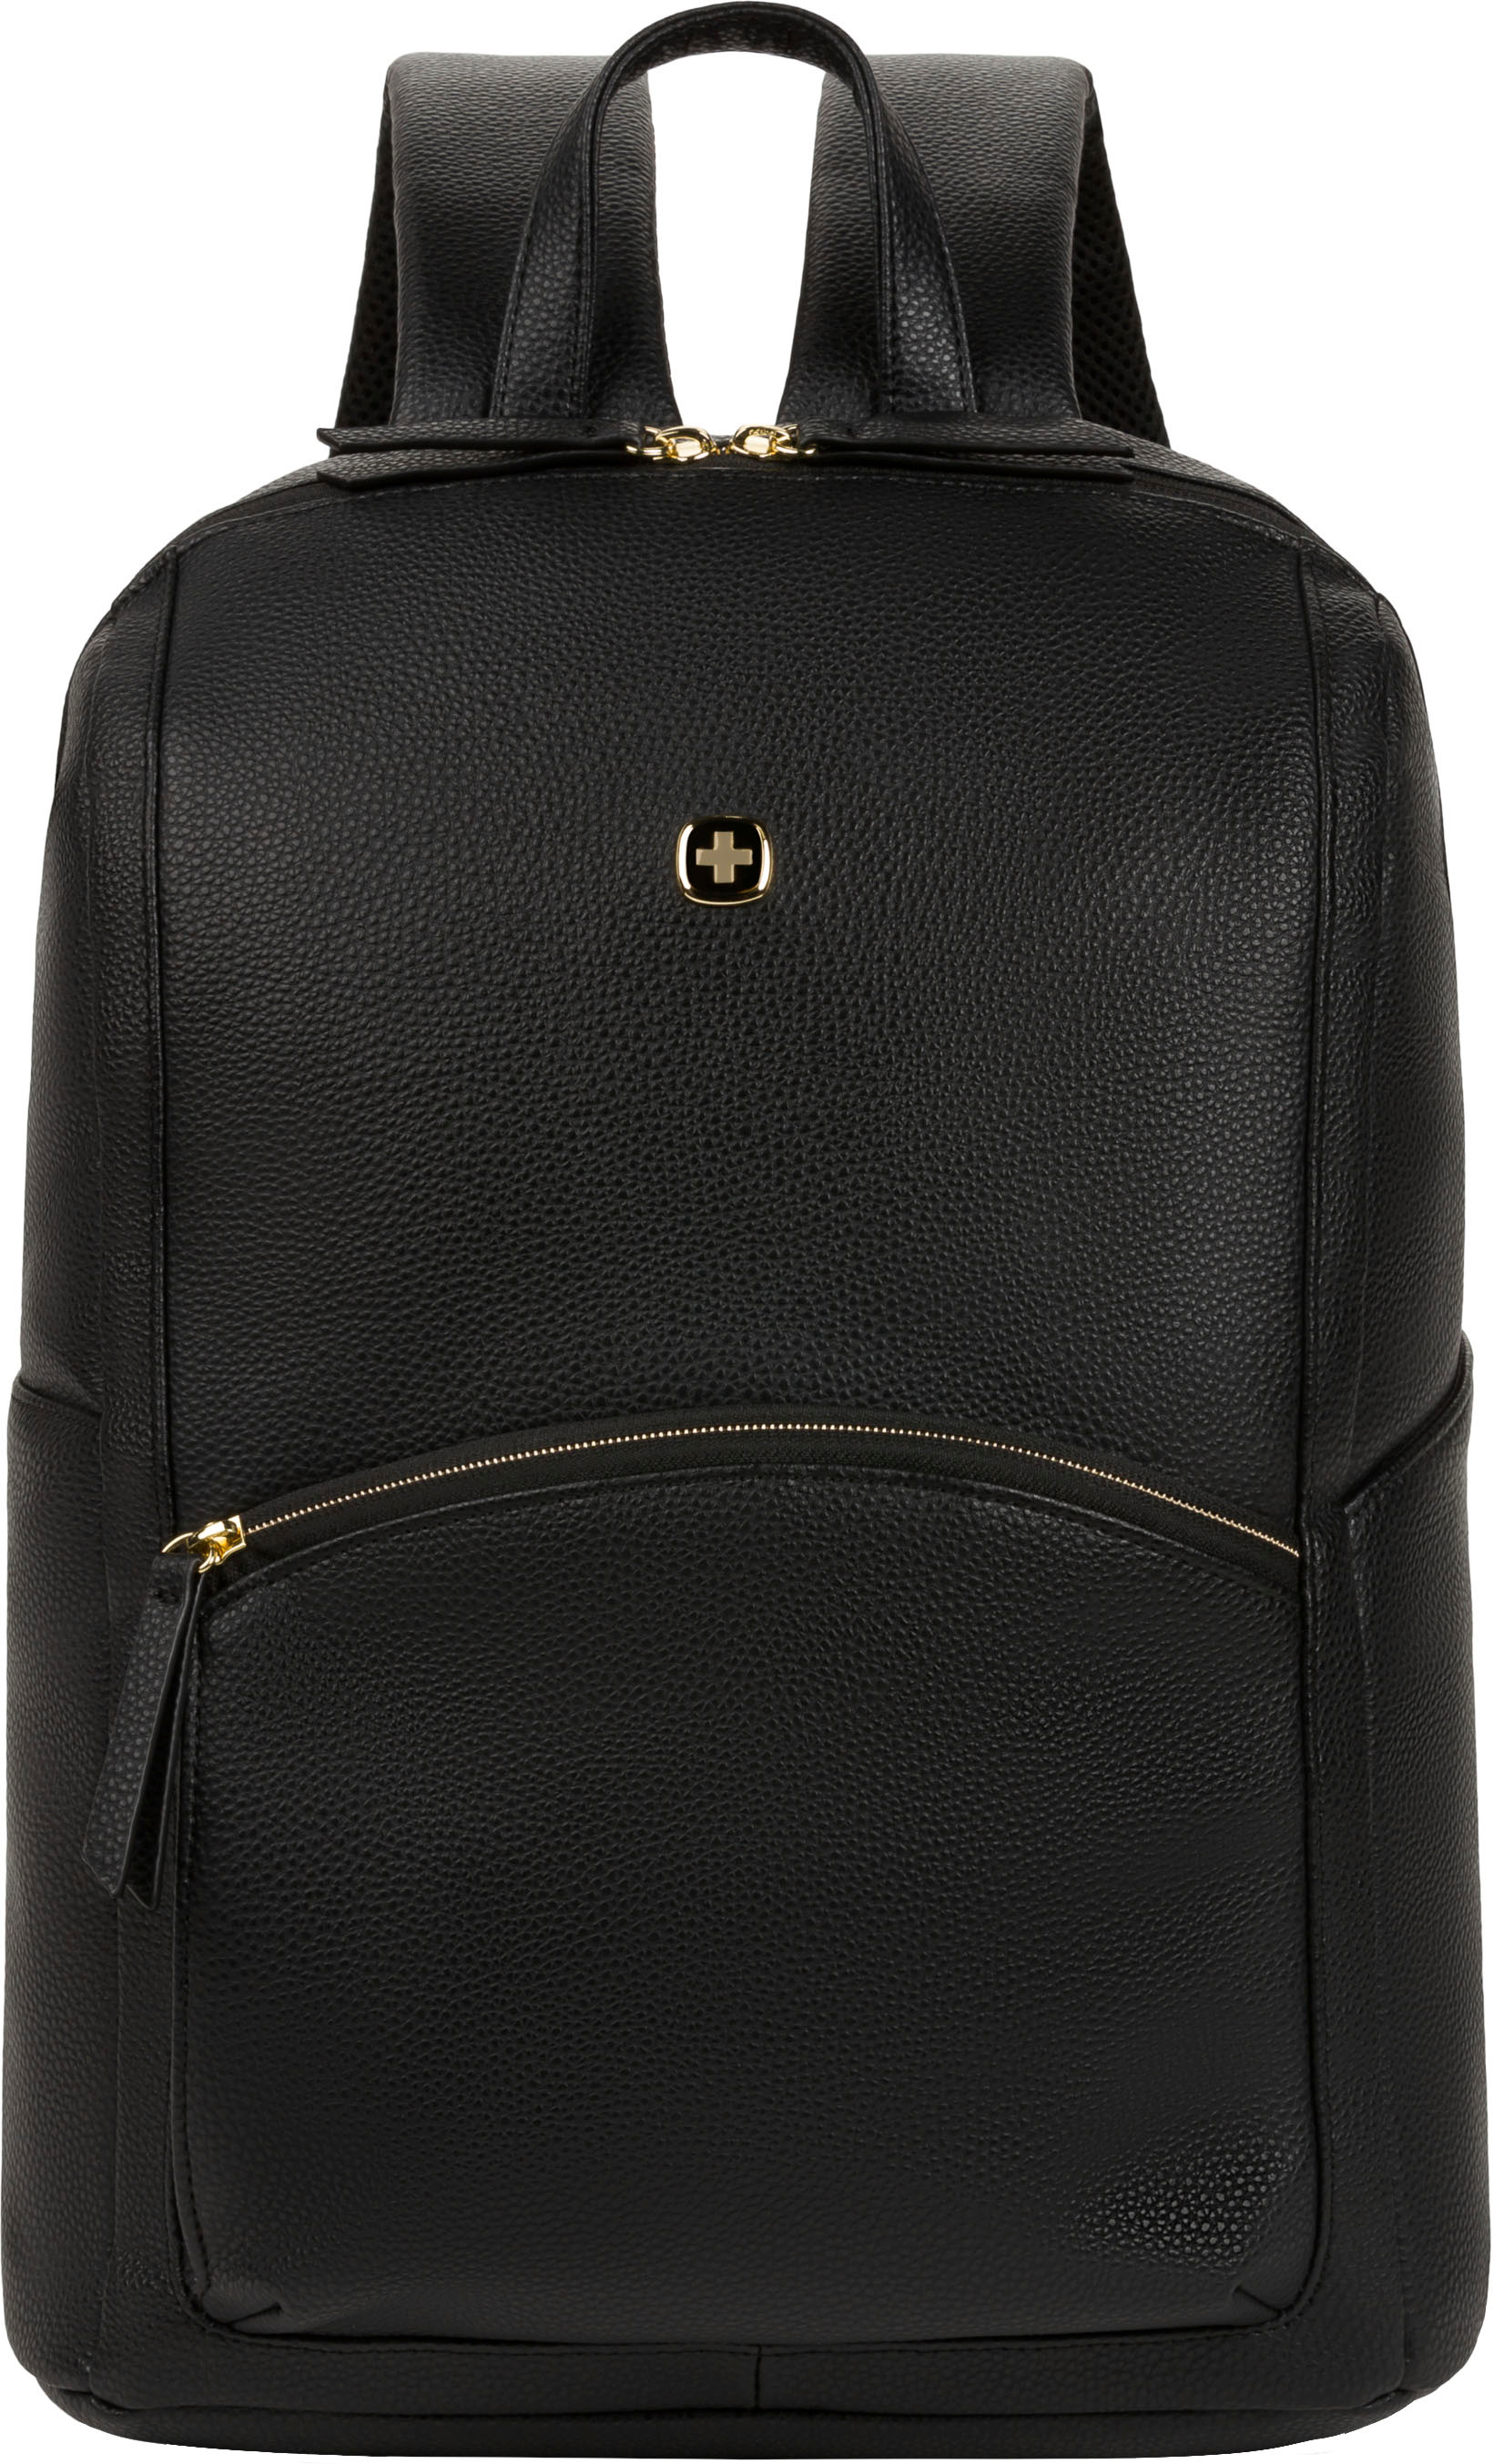 SwissGear - 9901 Ladies Laptop Backpack - Black $50